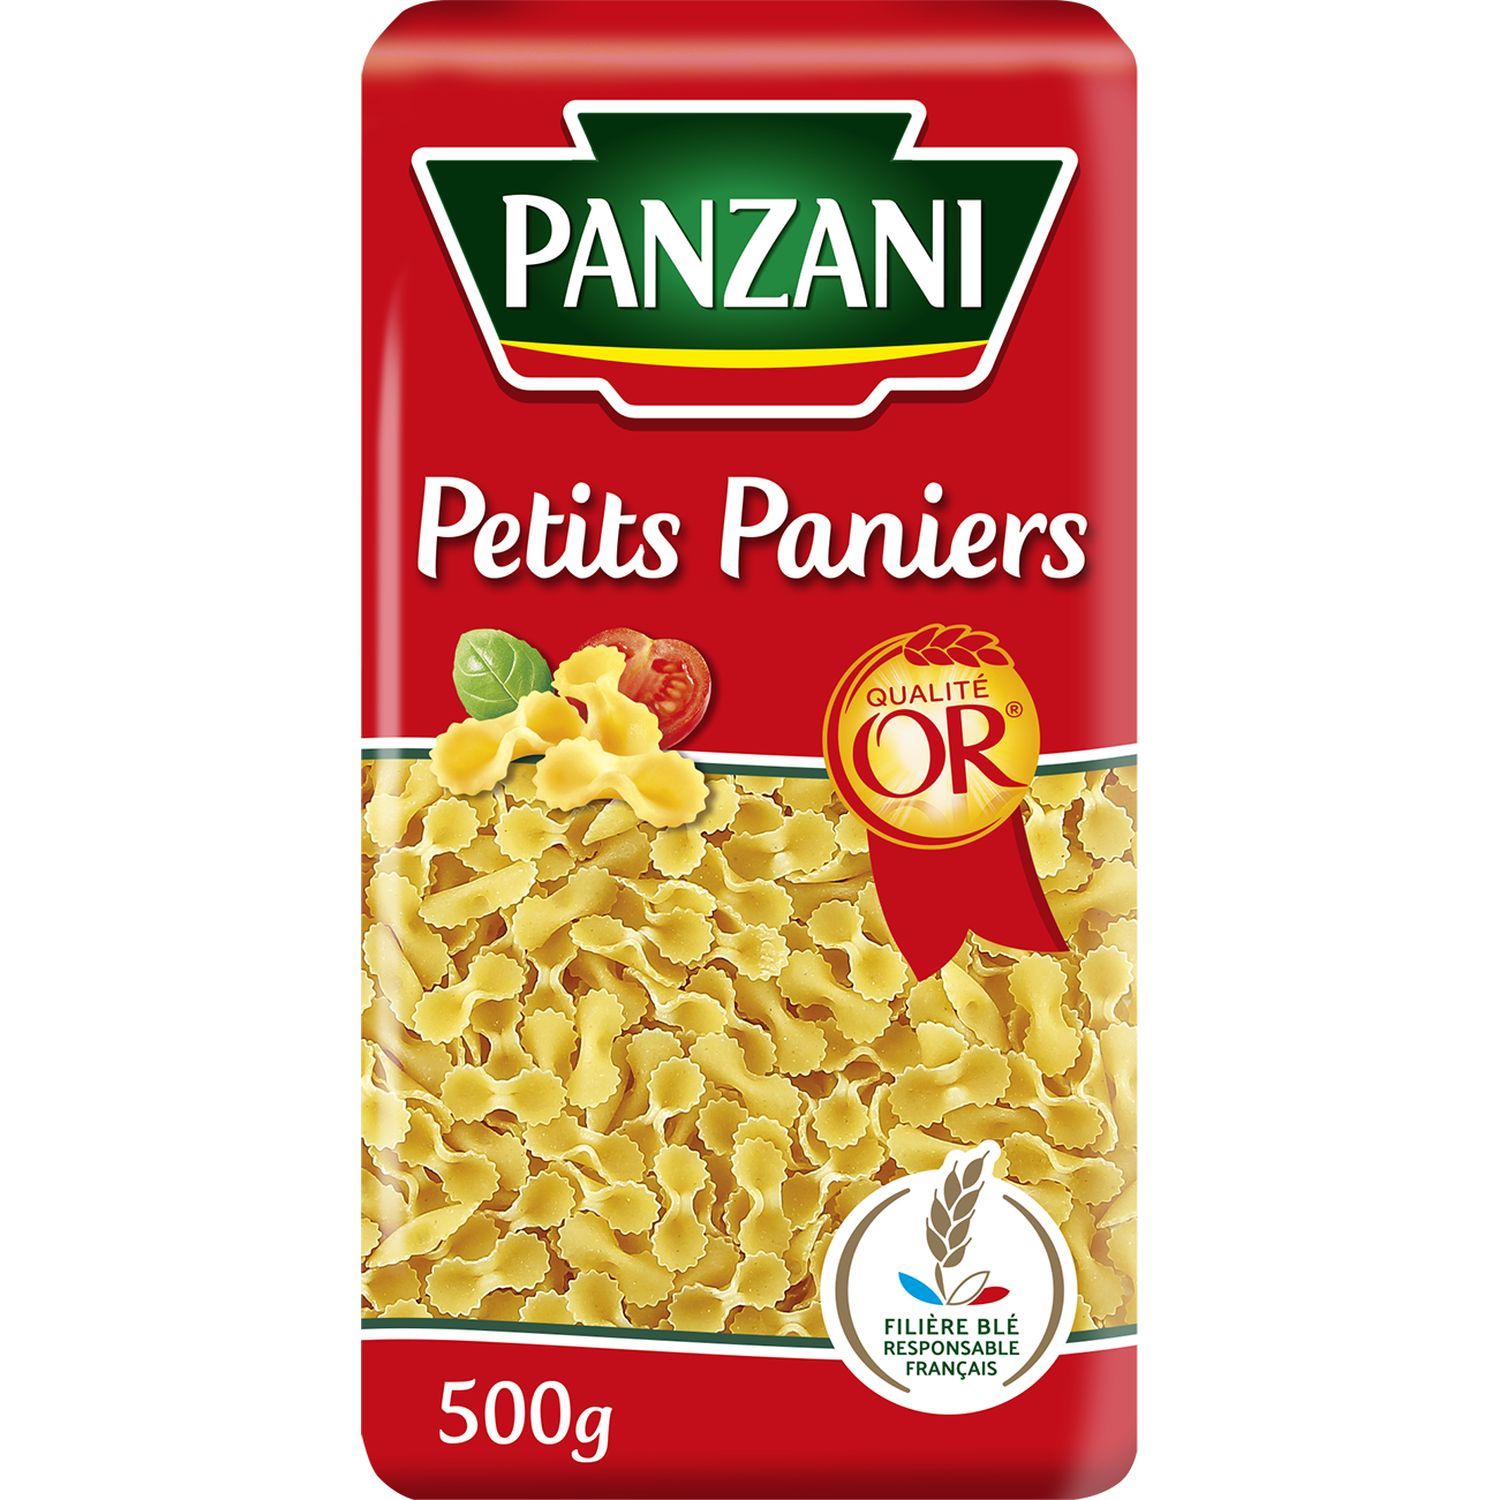 PANZANI Gansettes filière blé responsable français 500g pas cher